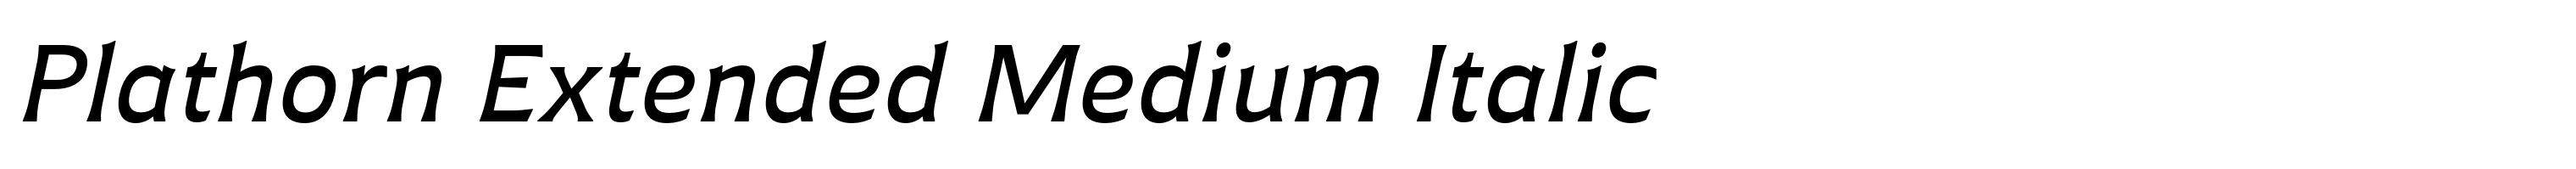 Plathorn Extended Medium Italic